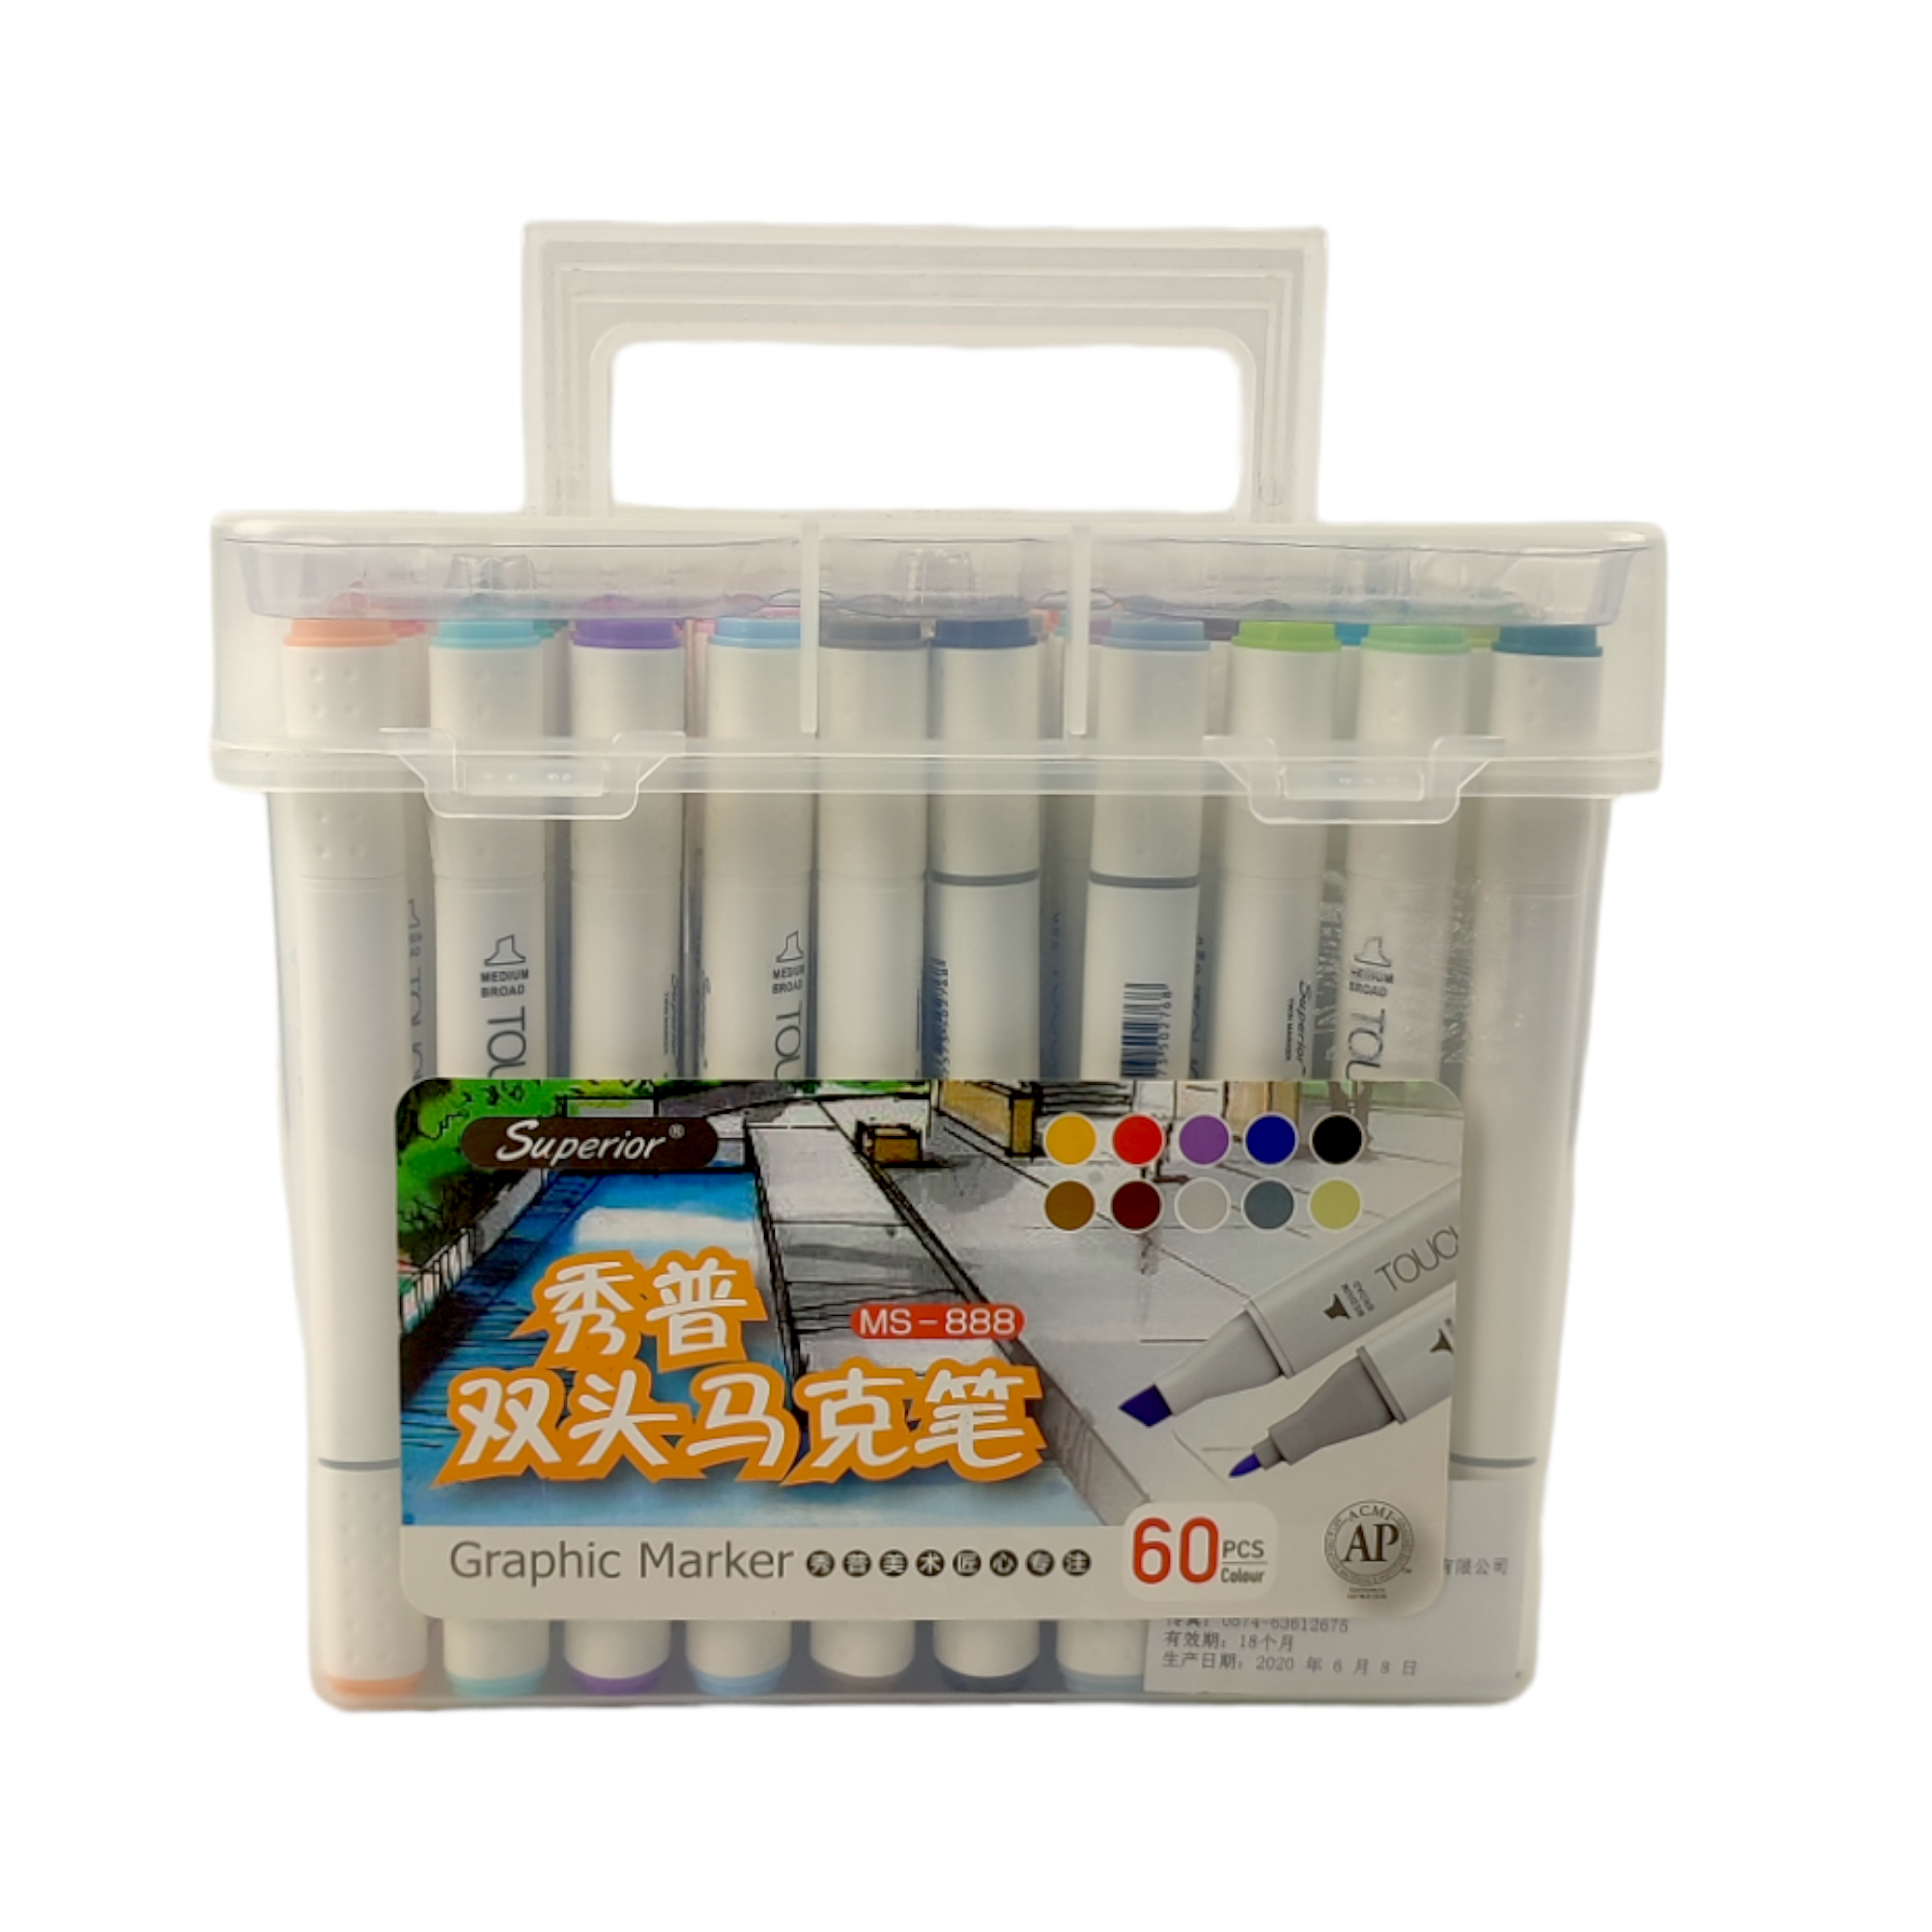 60pcs Mixed Color Fineliner Point Pen, Simple Multi-purpose